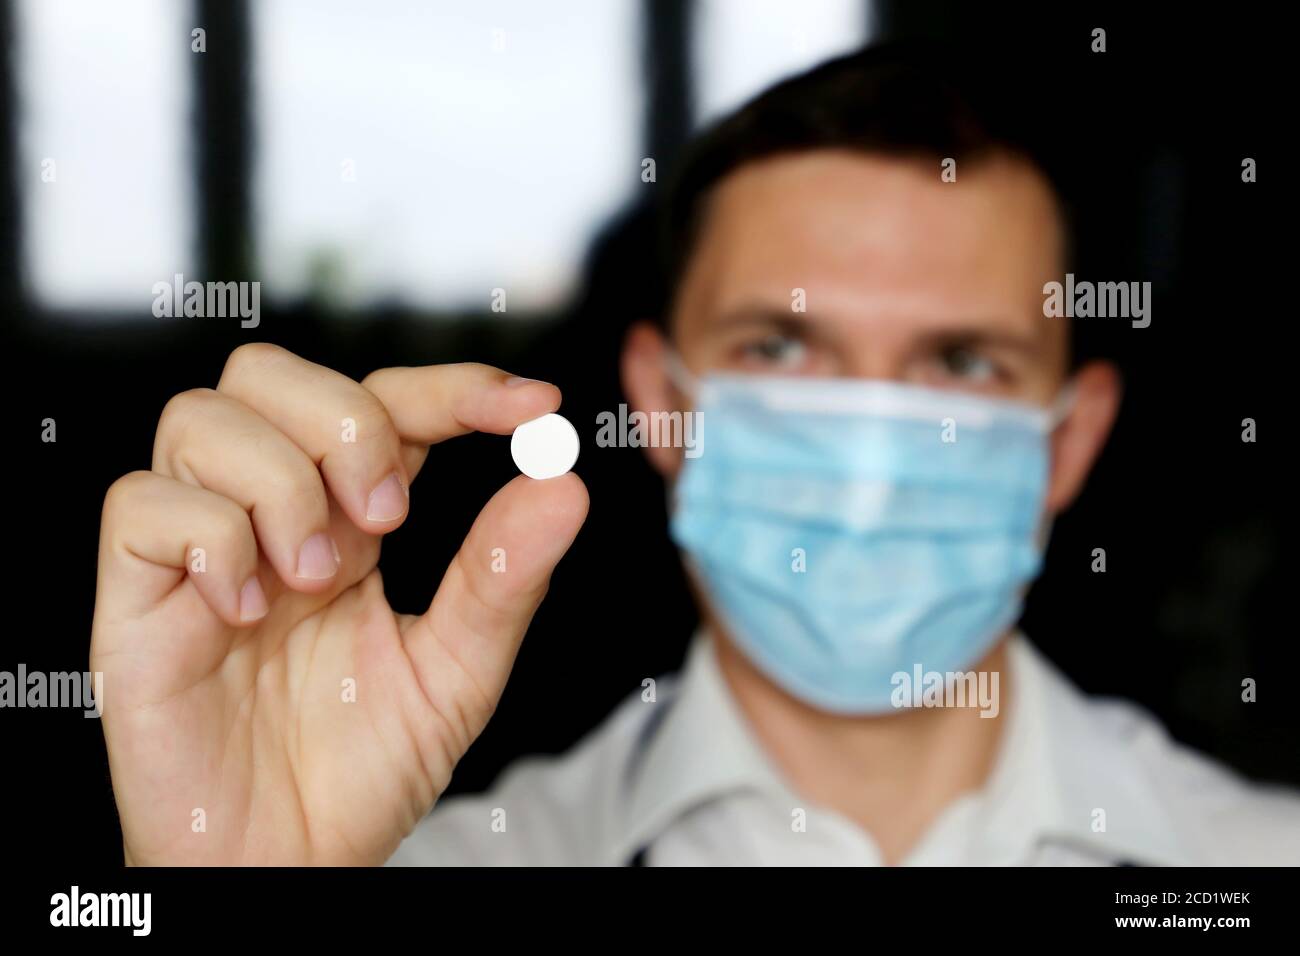 Médecin dans le masque médical tenant la pilule blanche, main masculine avec le médicament de près. Concept de pharmacien, médicaments, antibiotique ou vitamine Banque D'Images